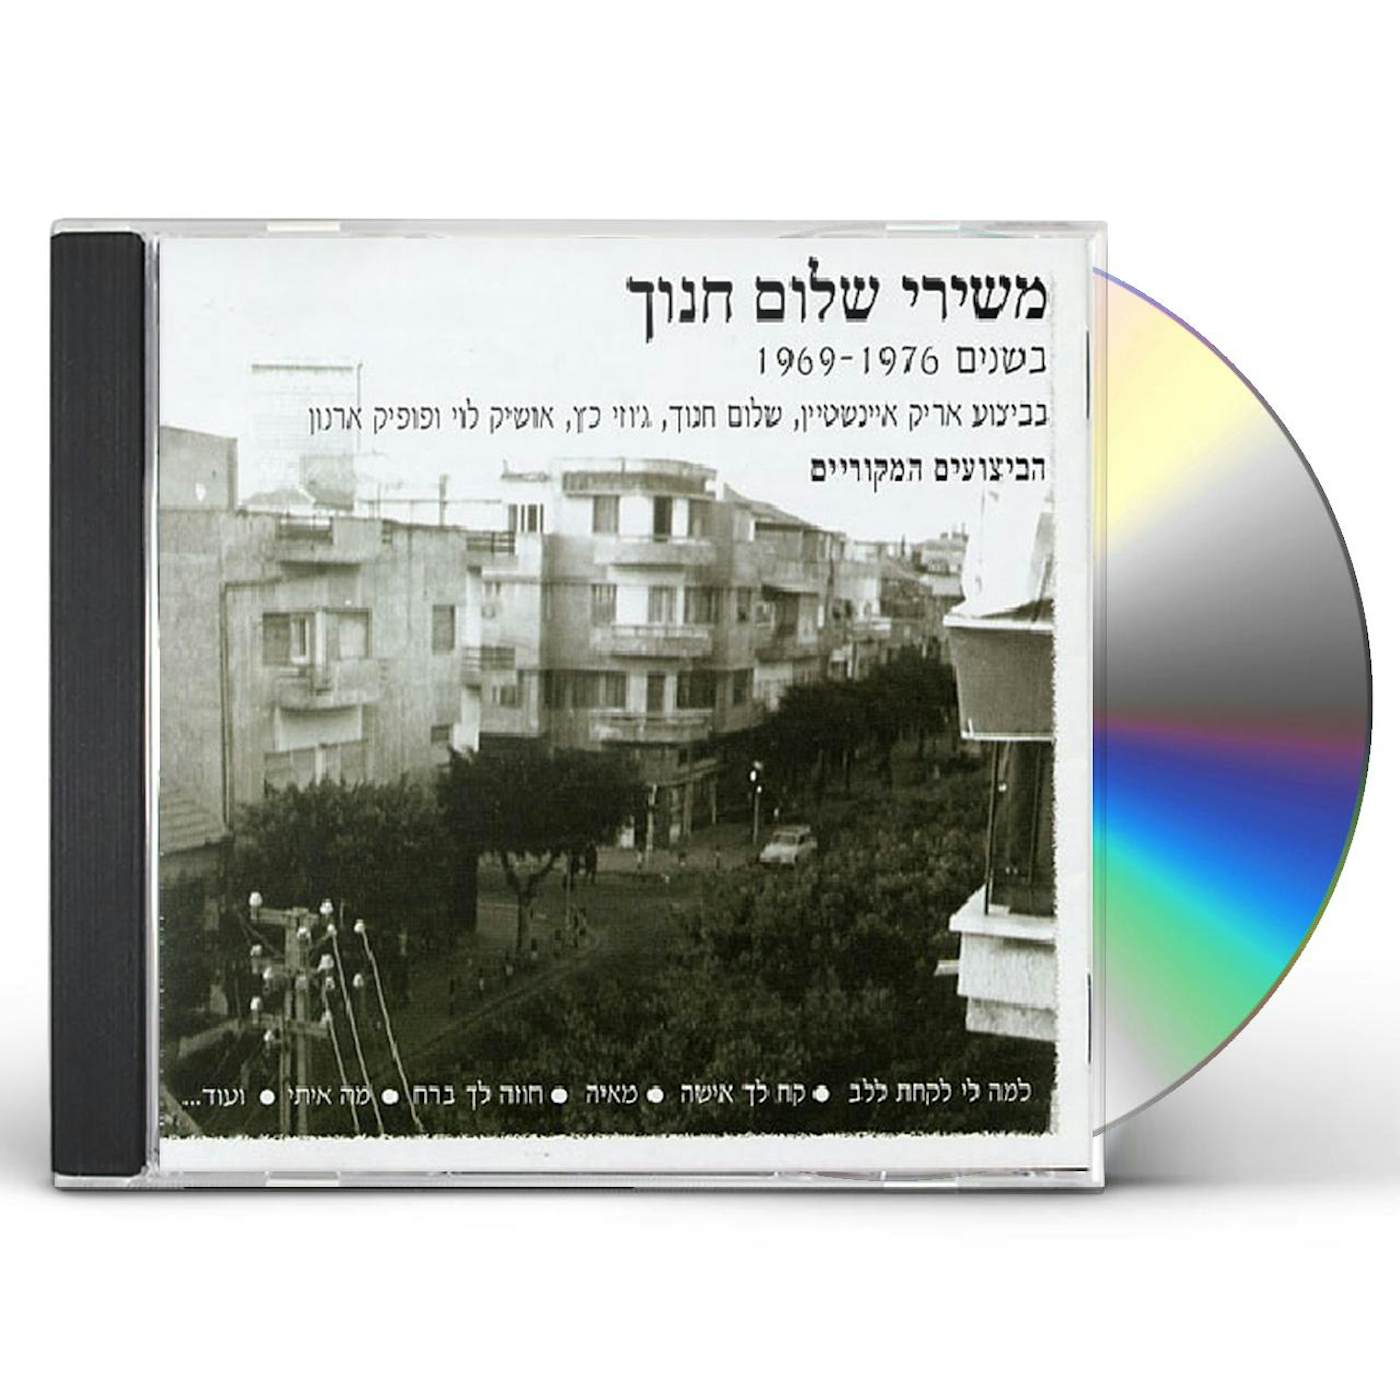 SONGS OF SHALOM HANOCH CD